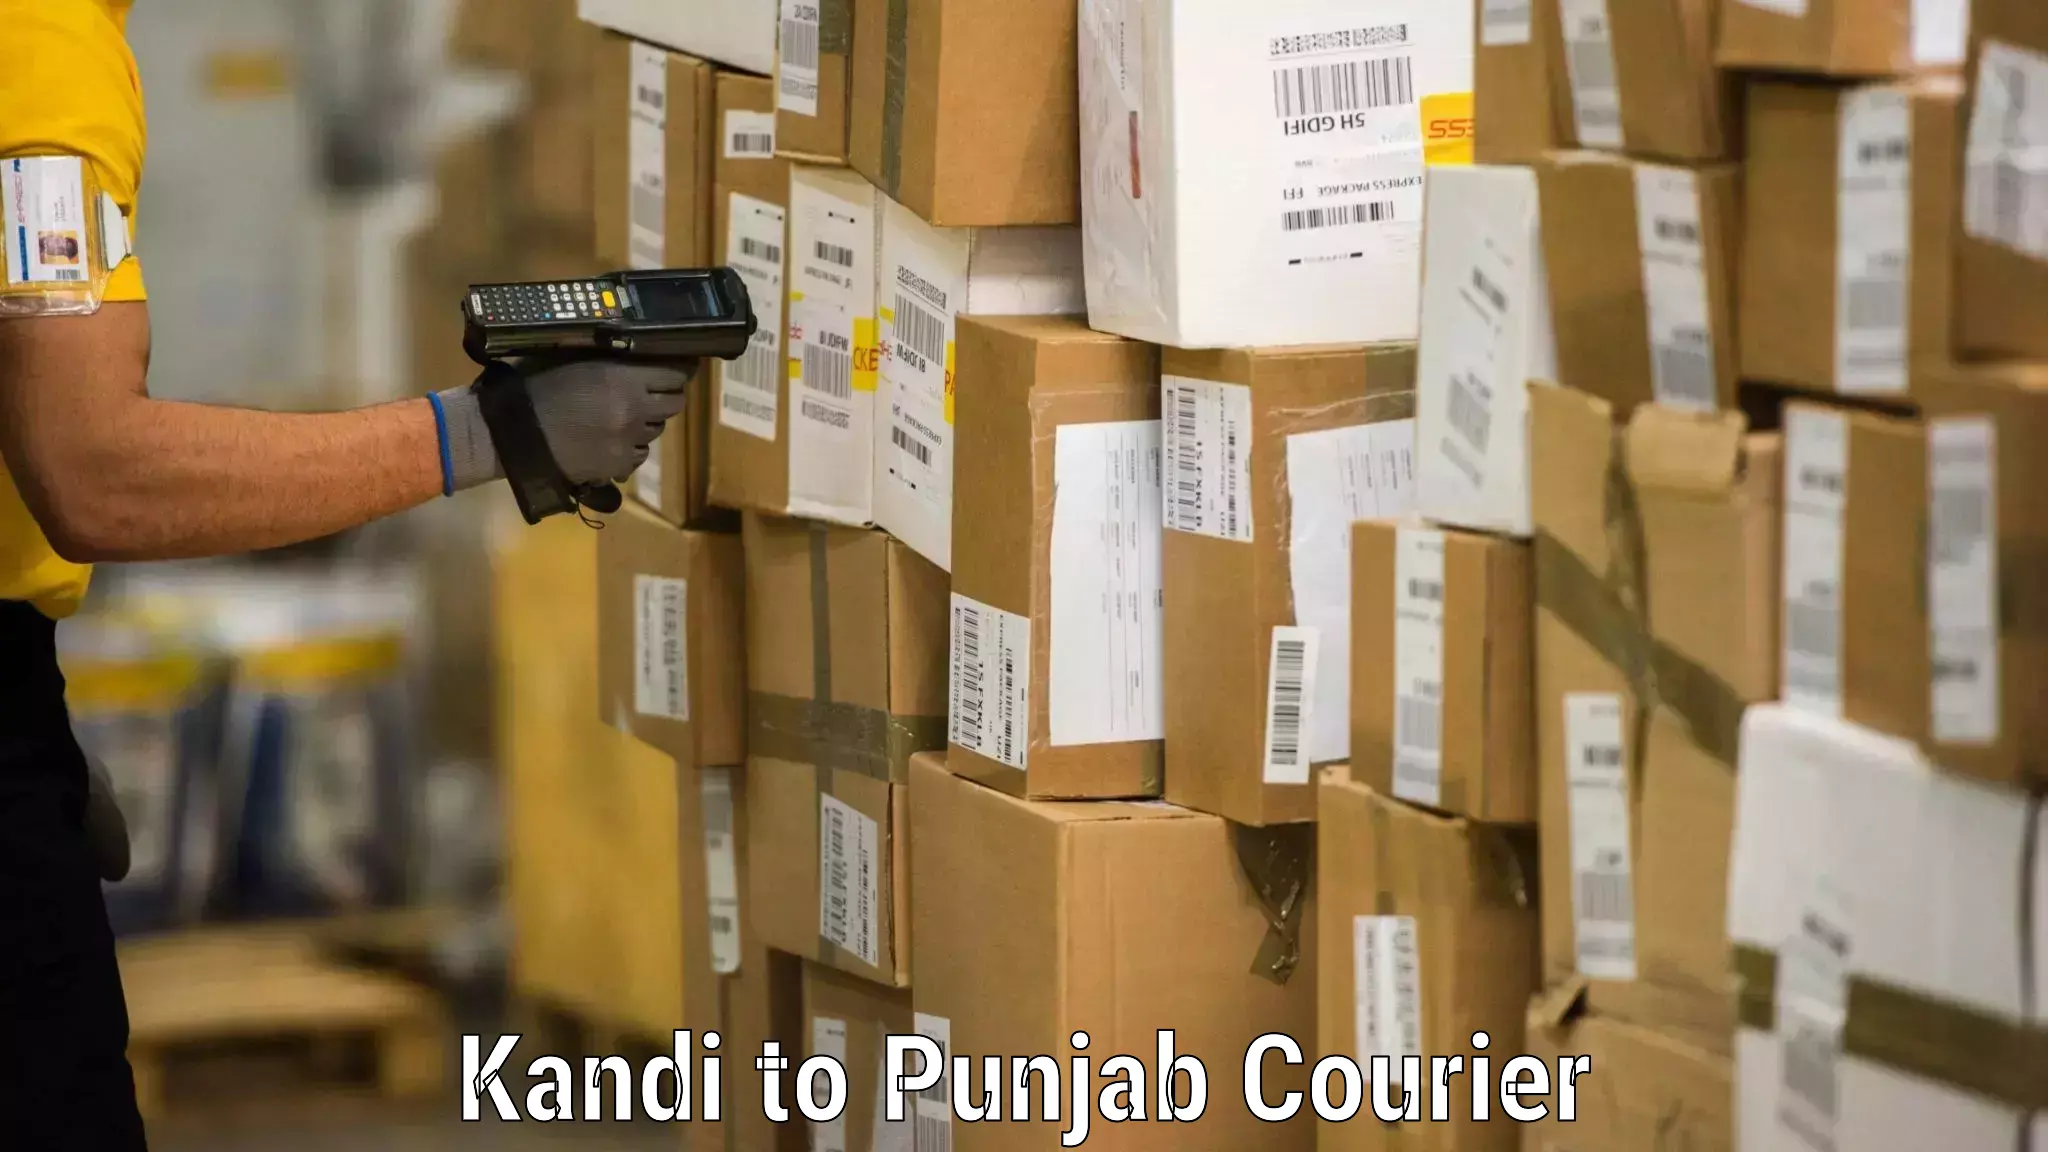 Moving and handling services Kandi to Punjab